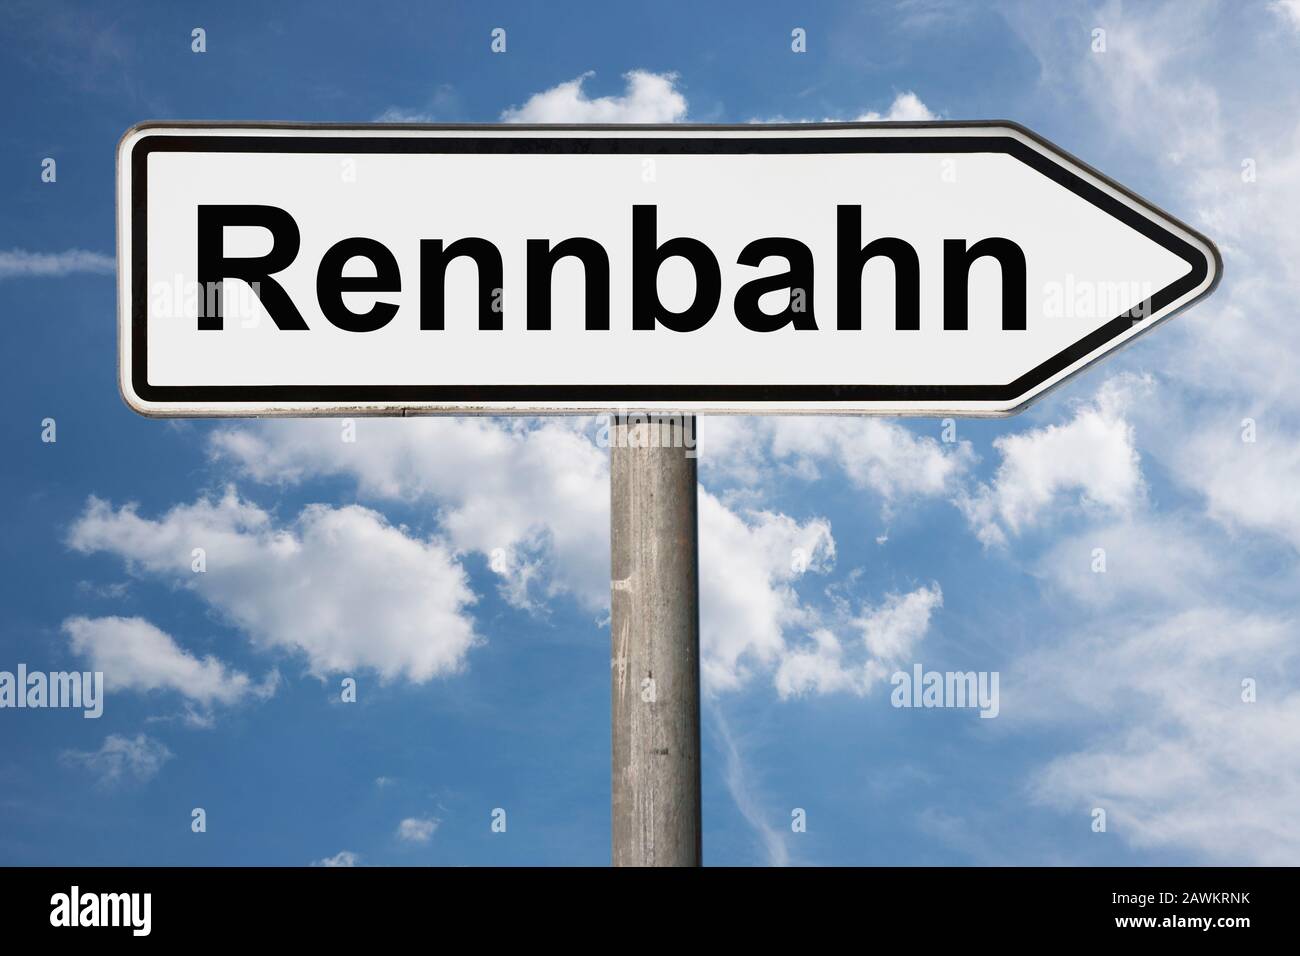 Photo détaillée d'un panneau avec l'inscription Rennbahn (Racetrack) Banque D'Images